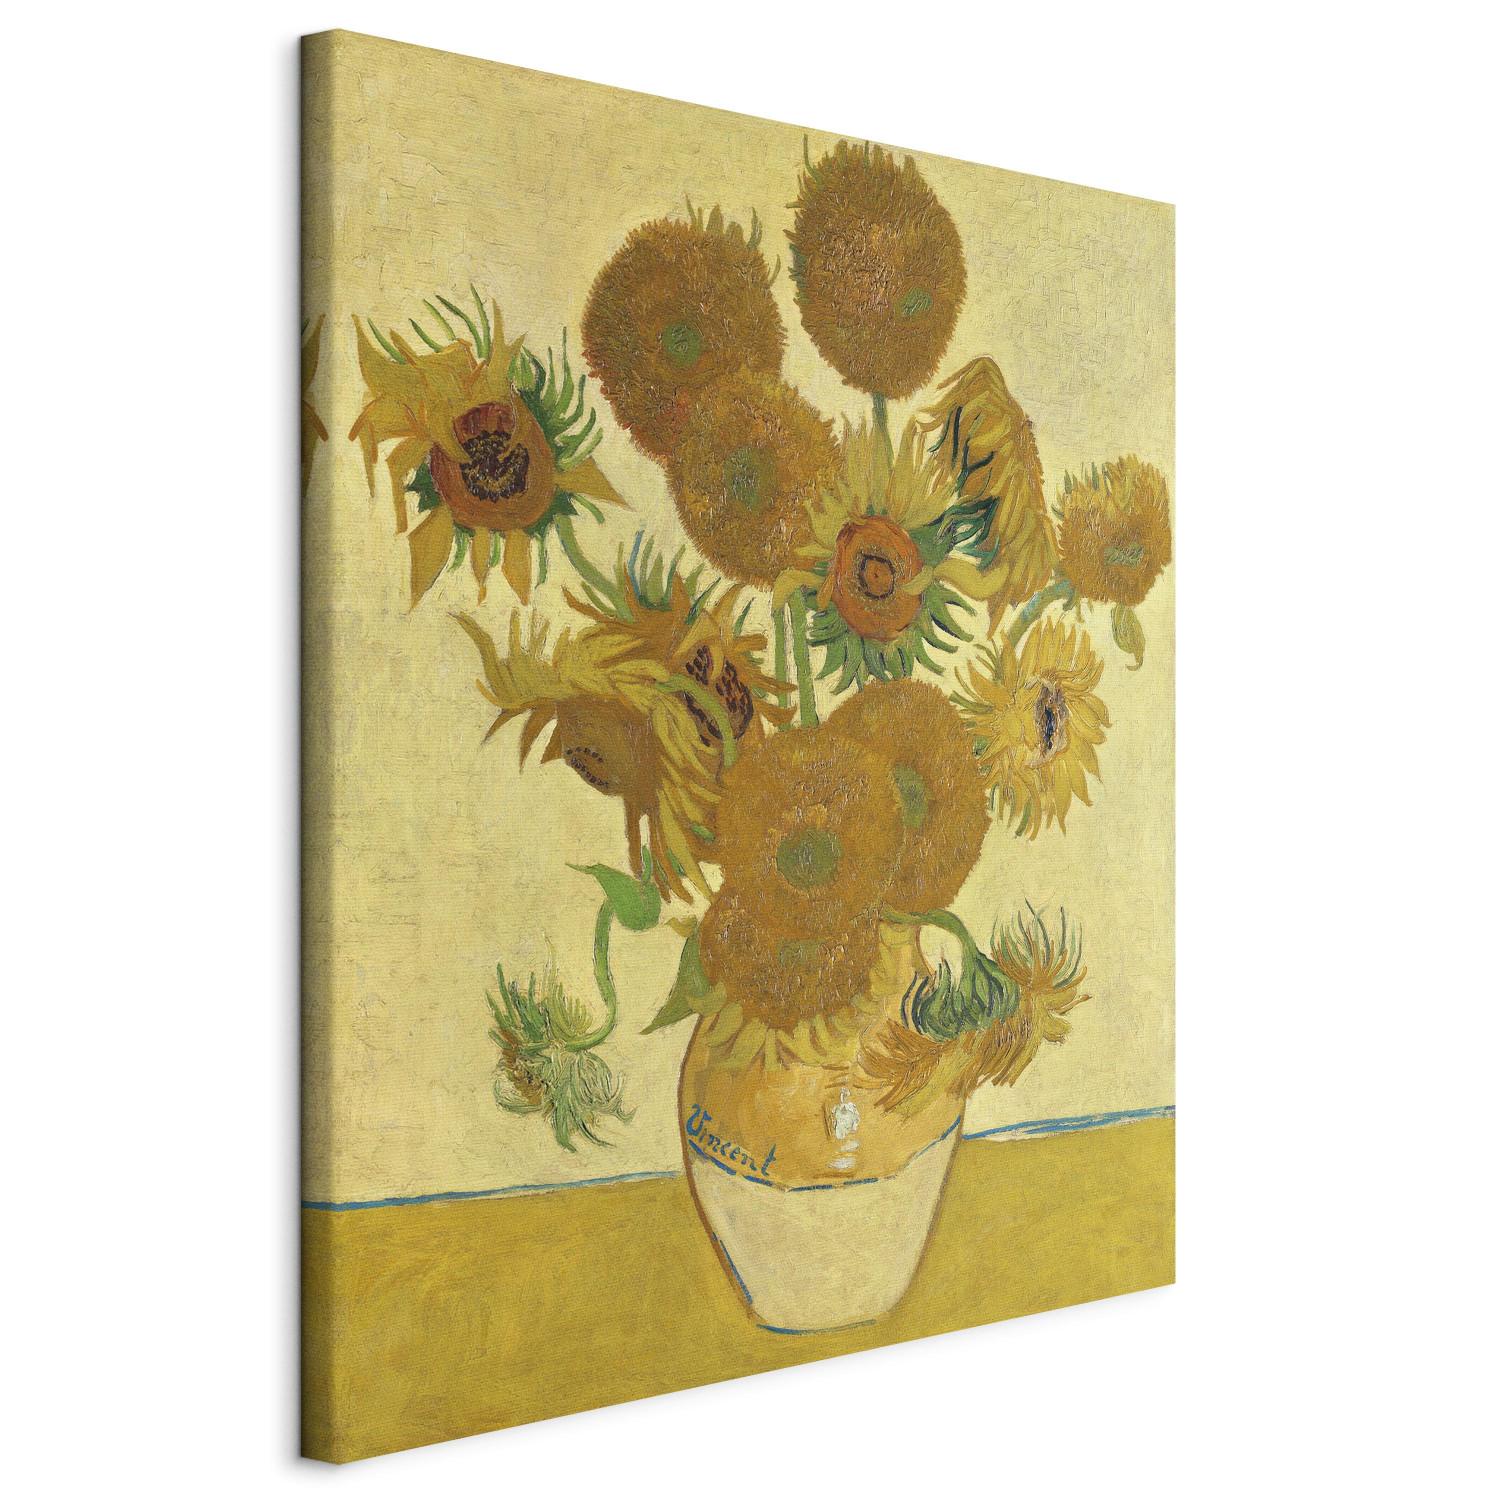 Réplica de pintura Sunflowers